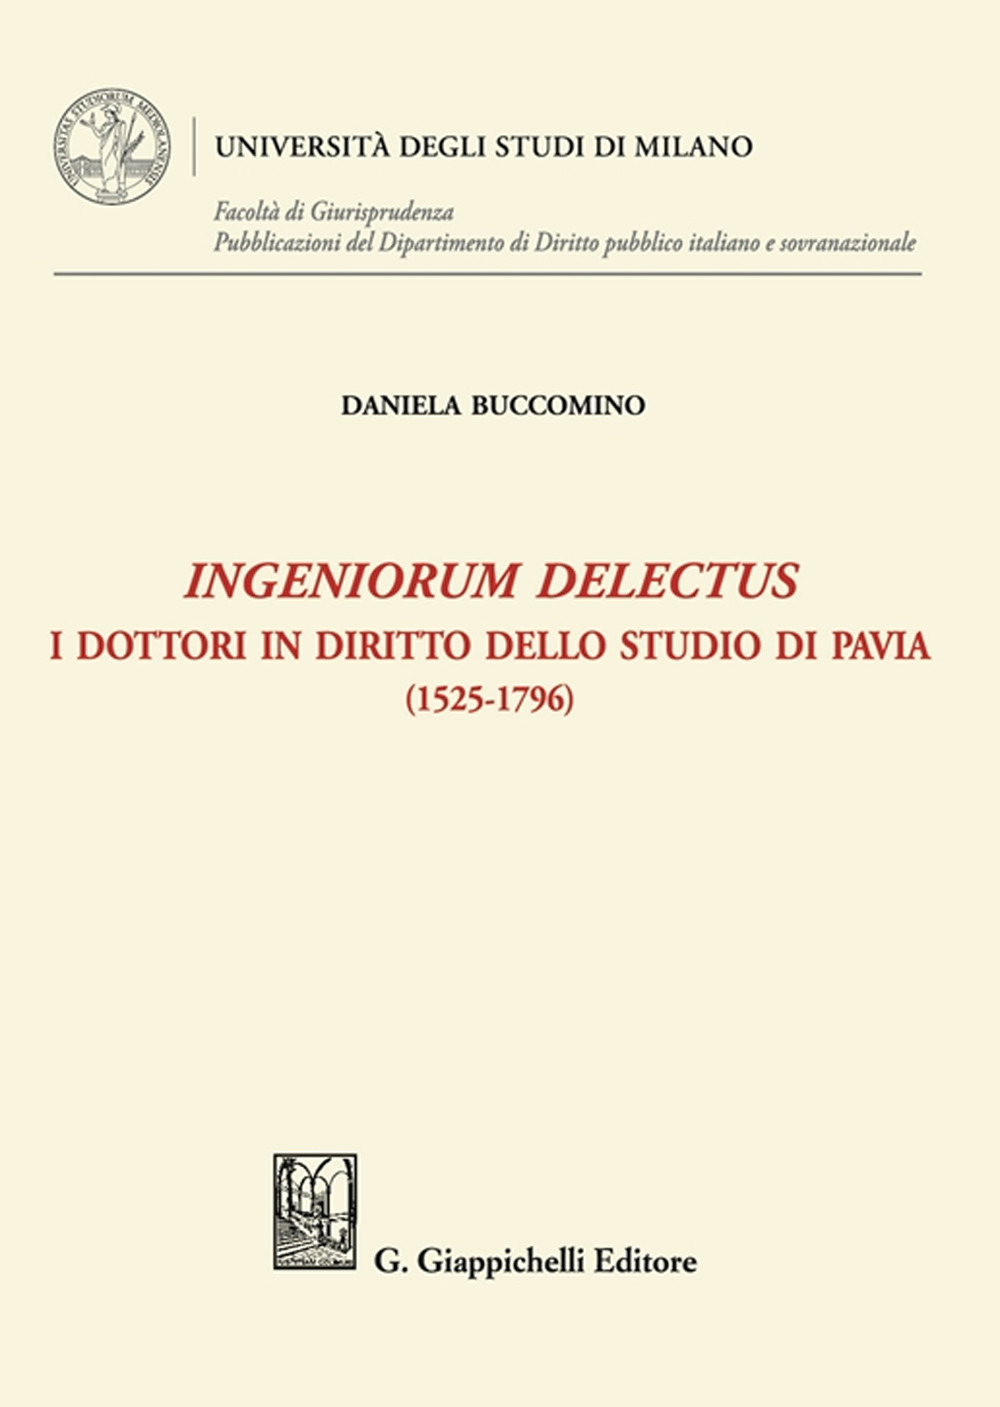 Ingeniorum delectus. I dottori in diritto dello studio di Pavia (1525-1796)